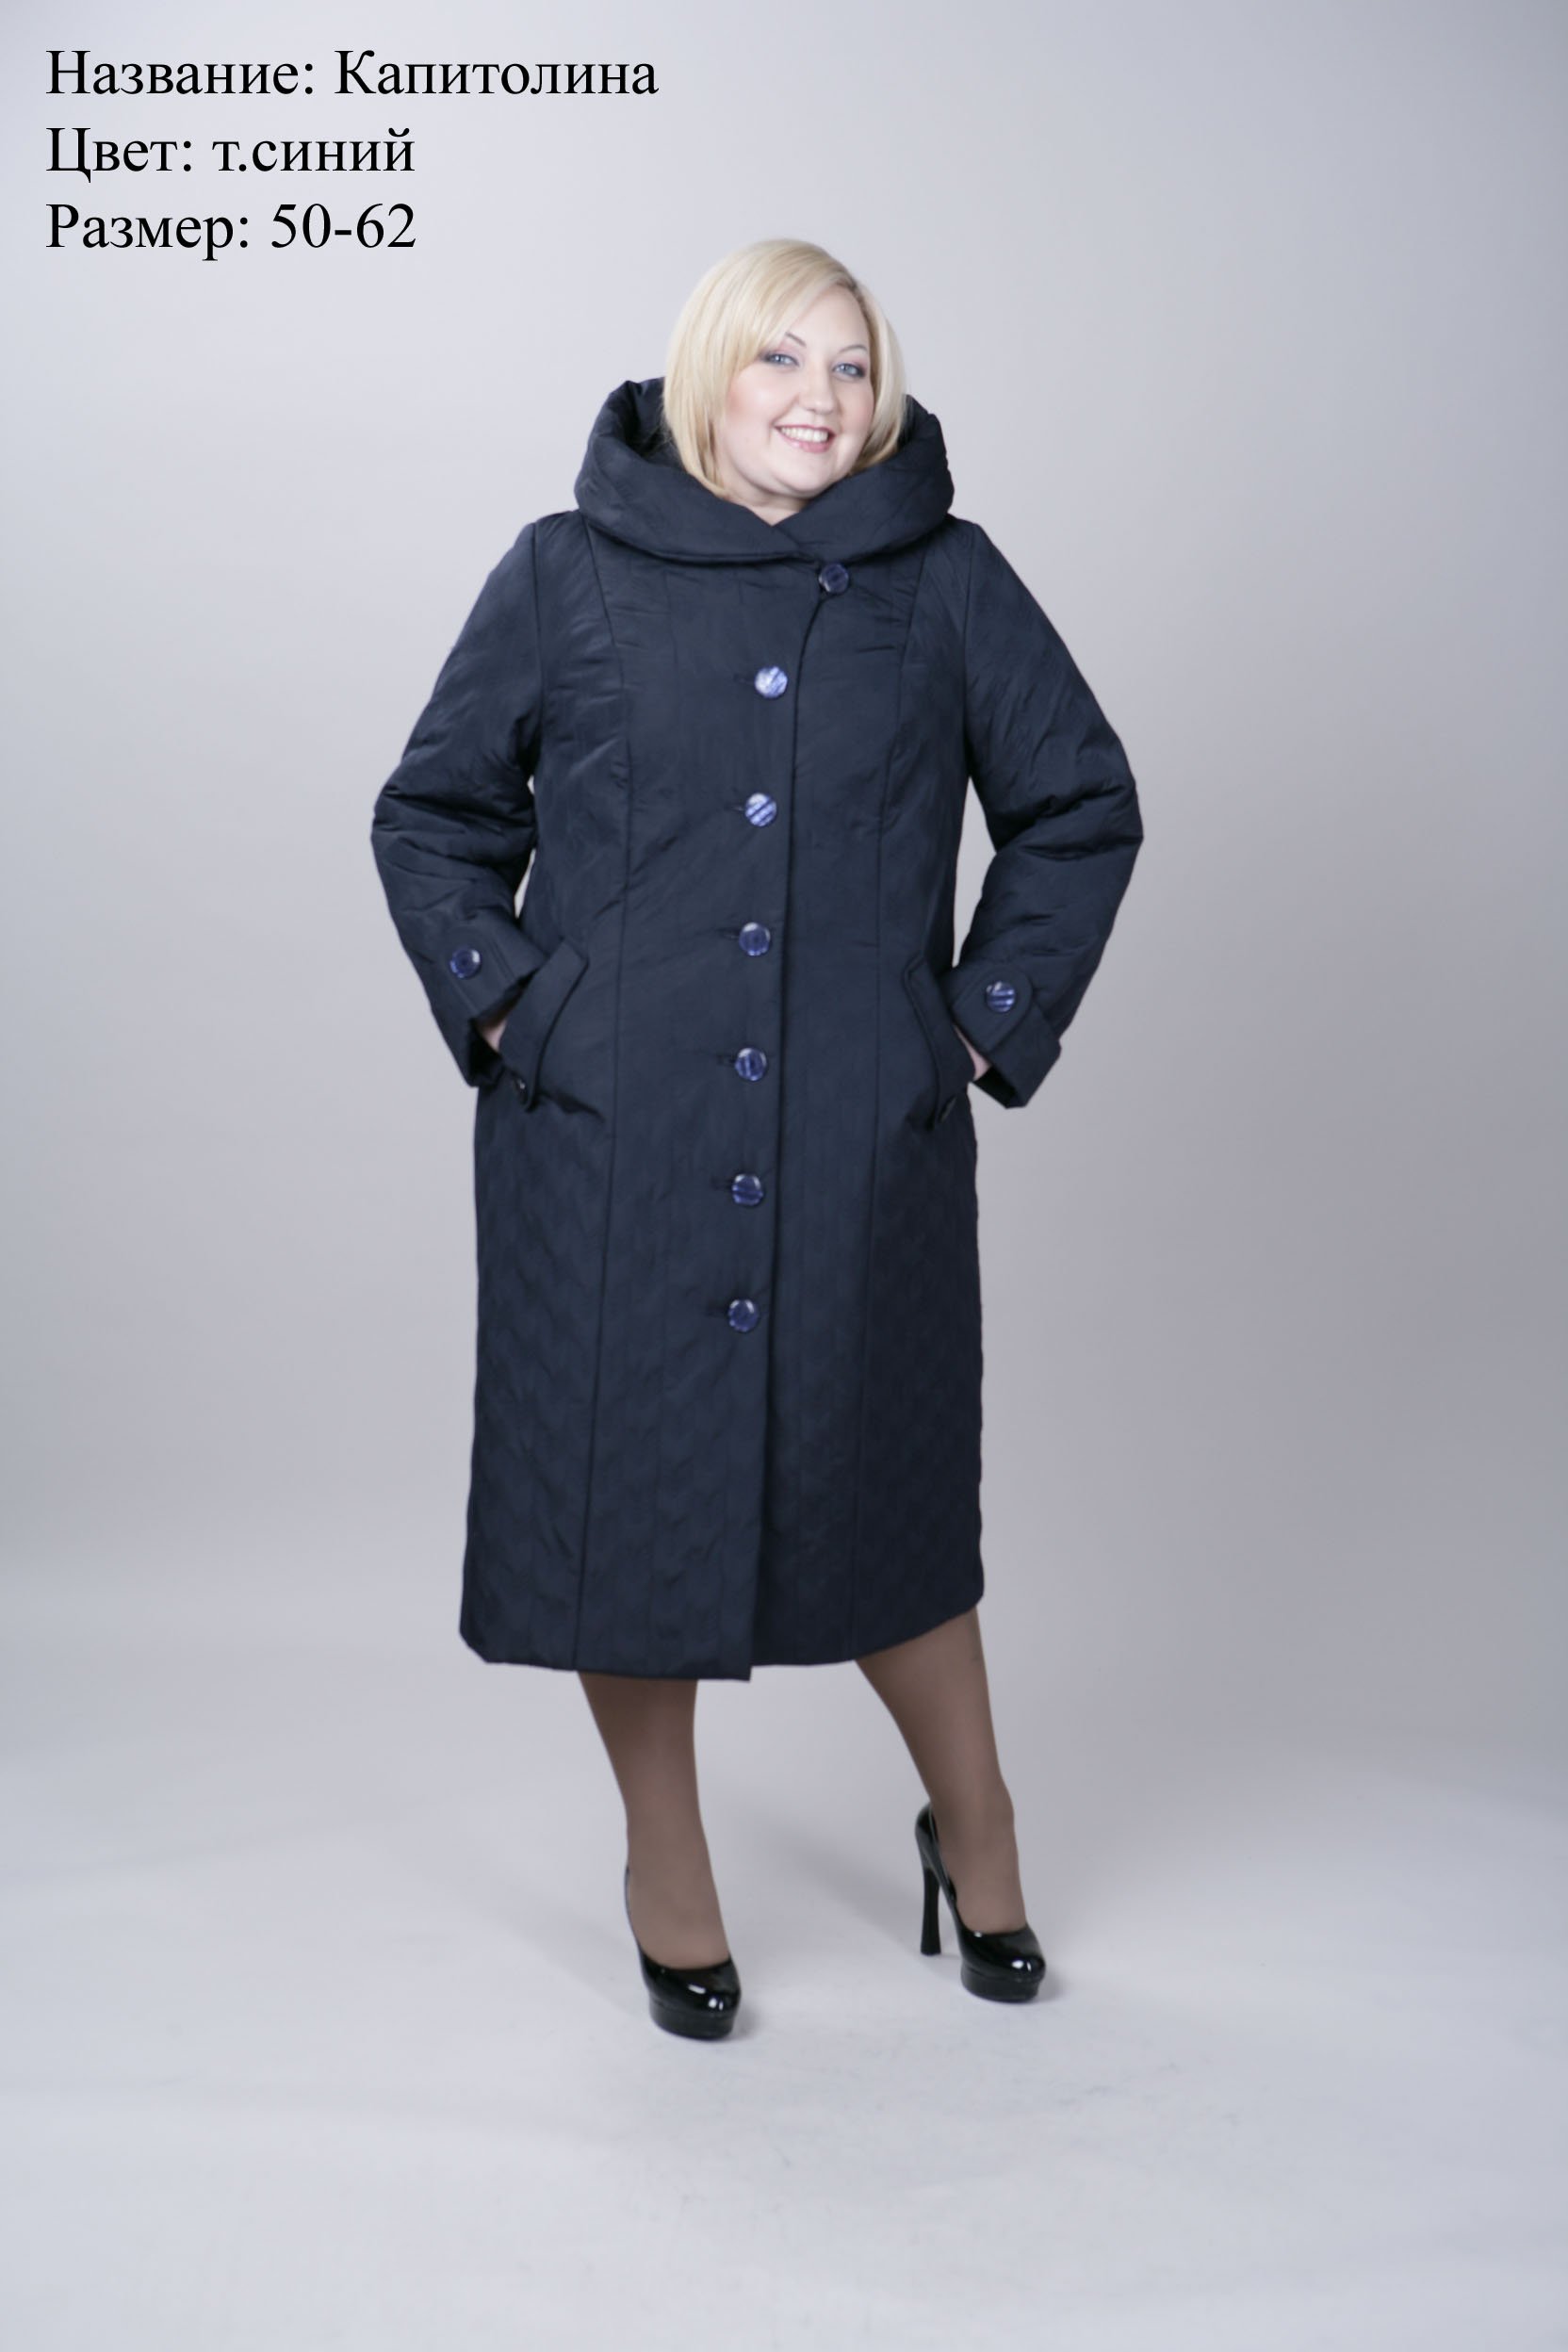 Женский зимнее пальто большого размера купить. Пальто 64 66 разм ПИТЖАКОФФ. Драповые пальто больших размеров женские. Пальто женское демисезонное больших размеров. Пальто зимнее женское больших размеров.